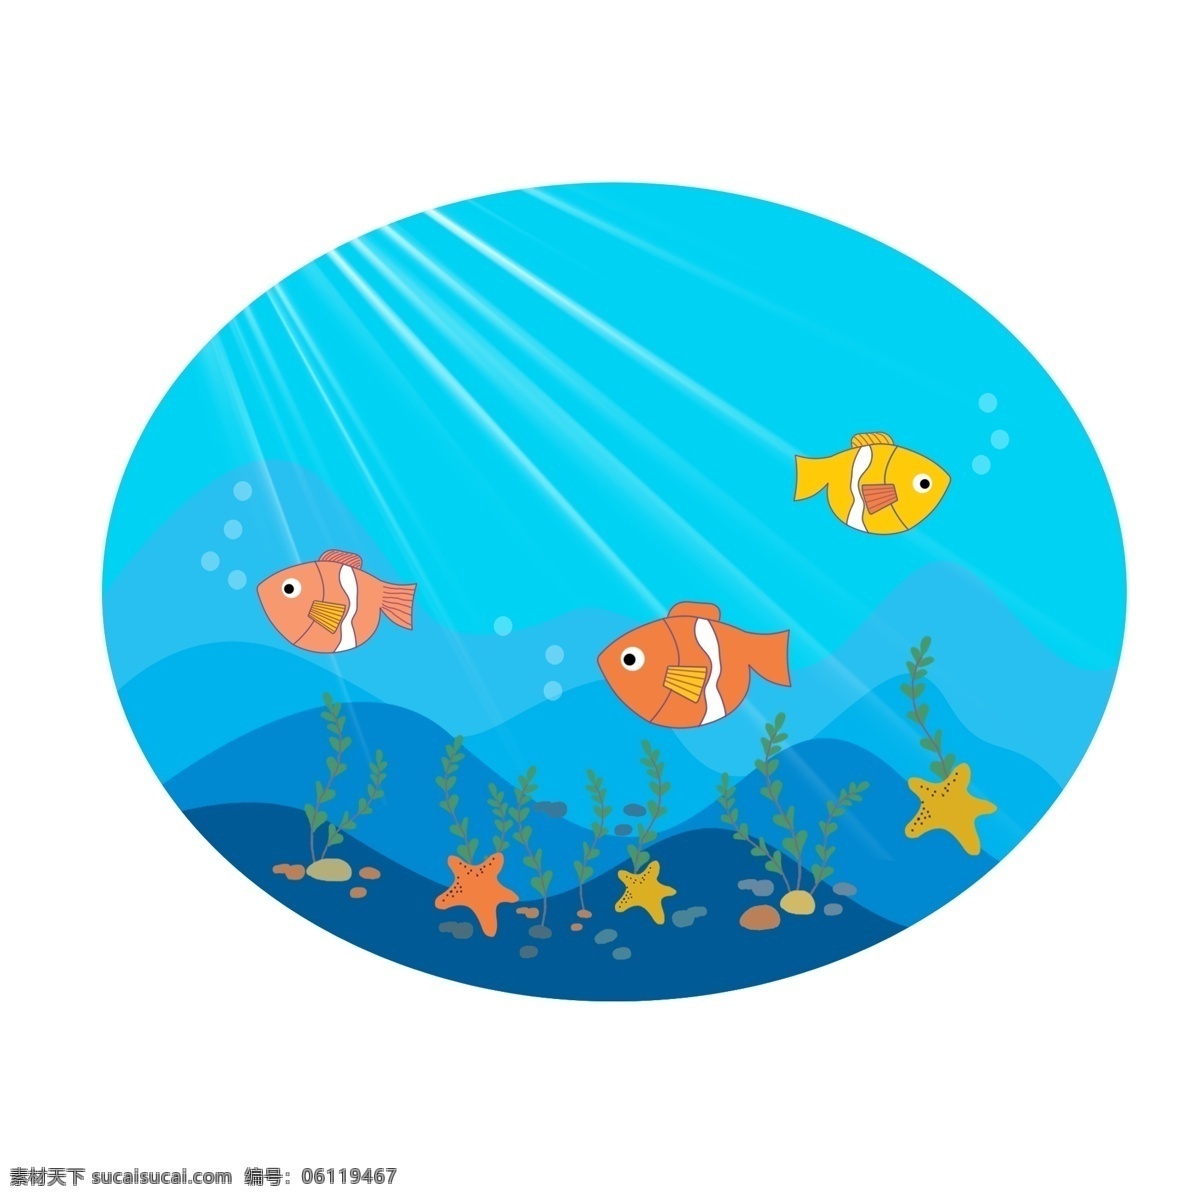 手绘 卡通 海底 世界 场景 元素 鱼 海草 海星